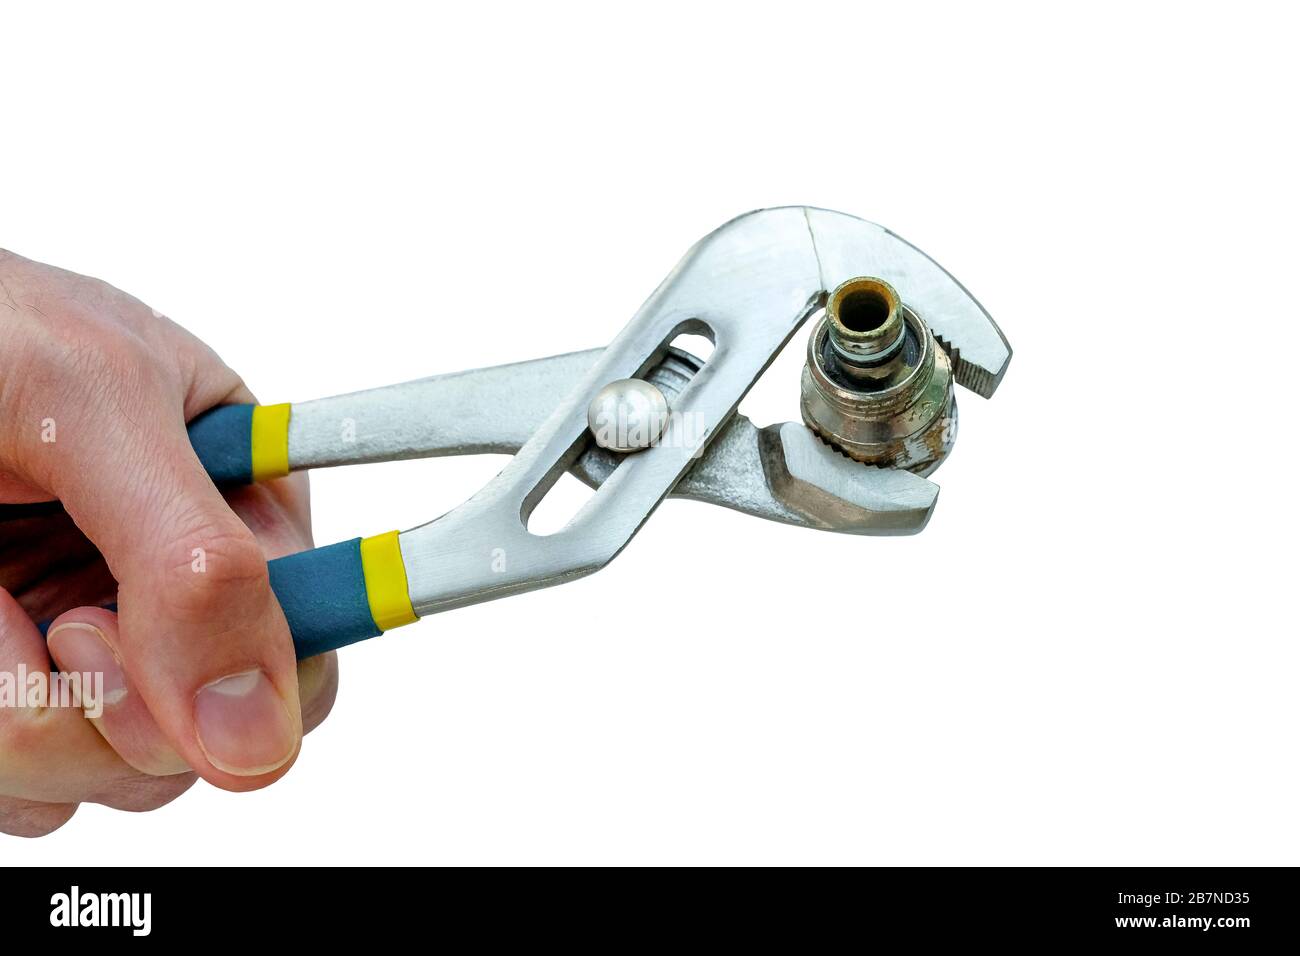 Klempnerschlüssel in der Hand. Werkzeug für Leitungen. Die alte Kupplung wird mit einem Schraubenschlüssel gespannt. Isoliertes Foto. Stockfoto